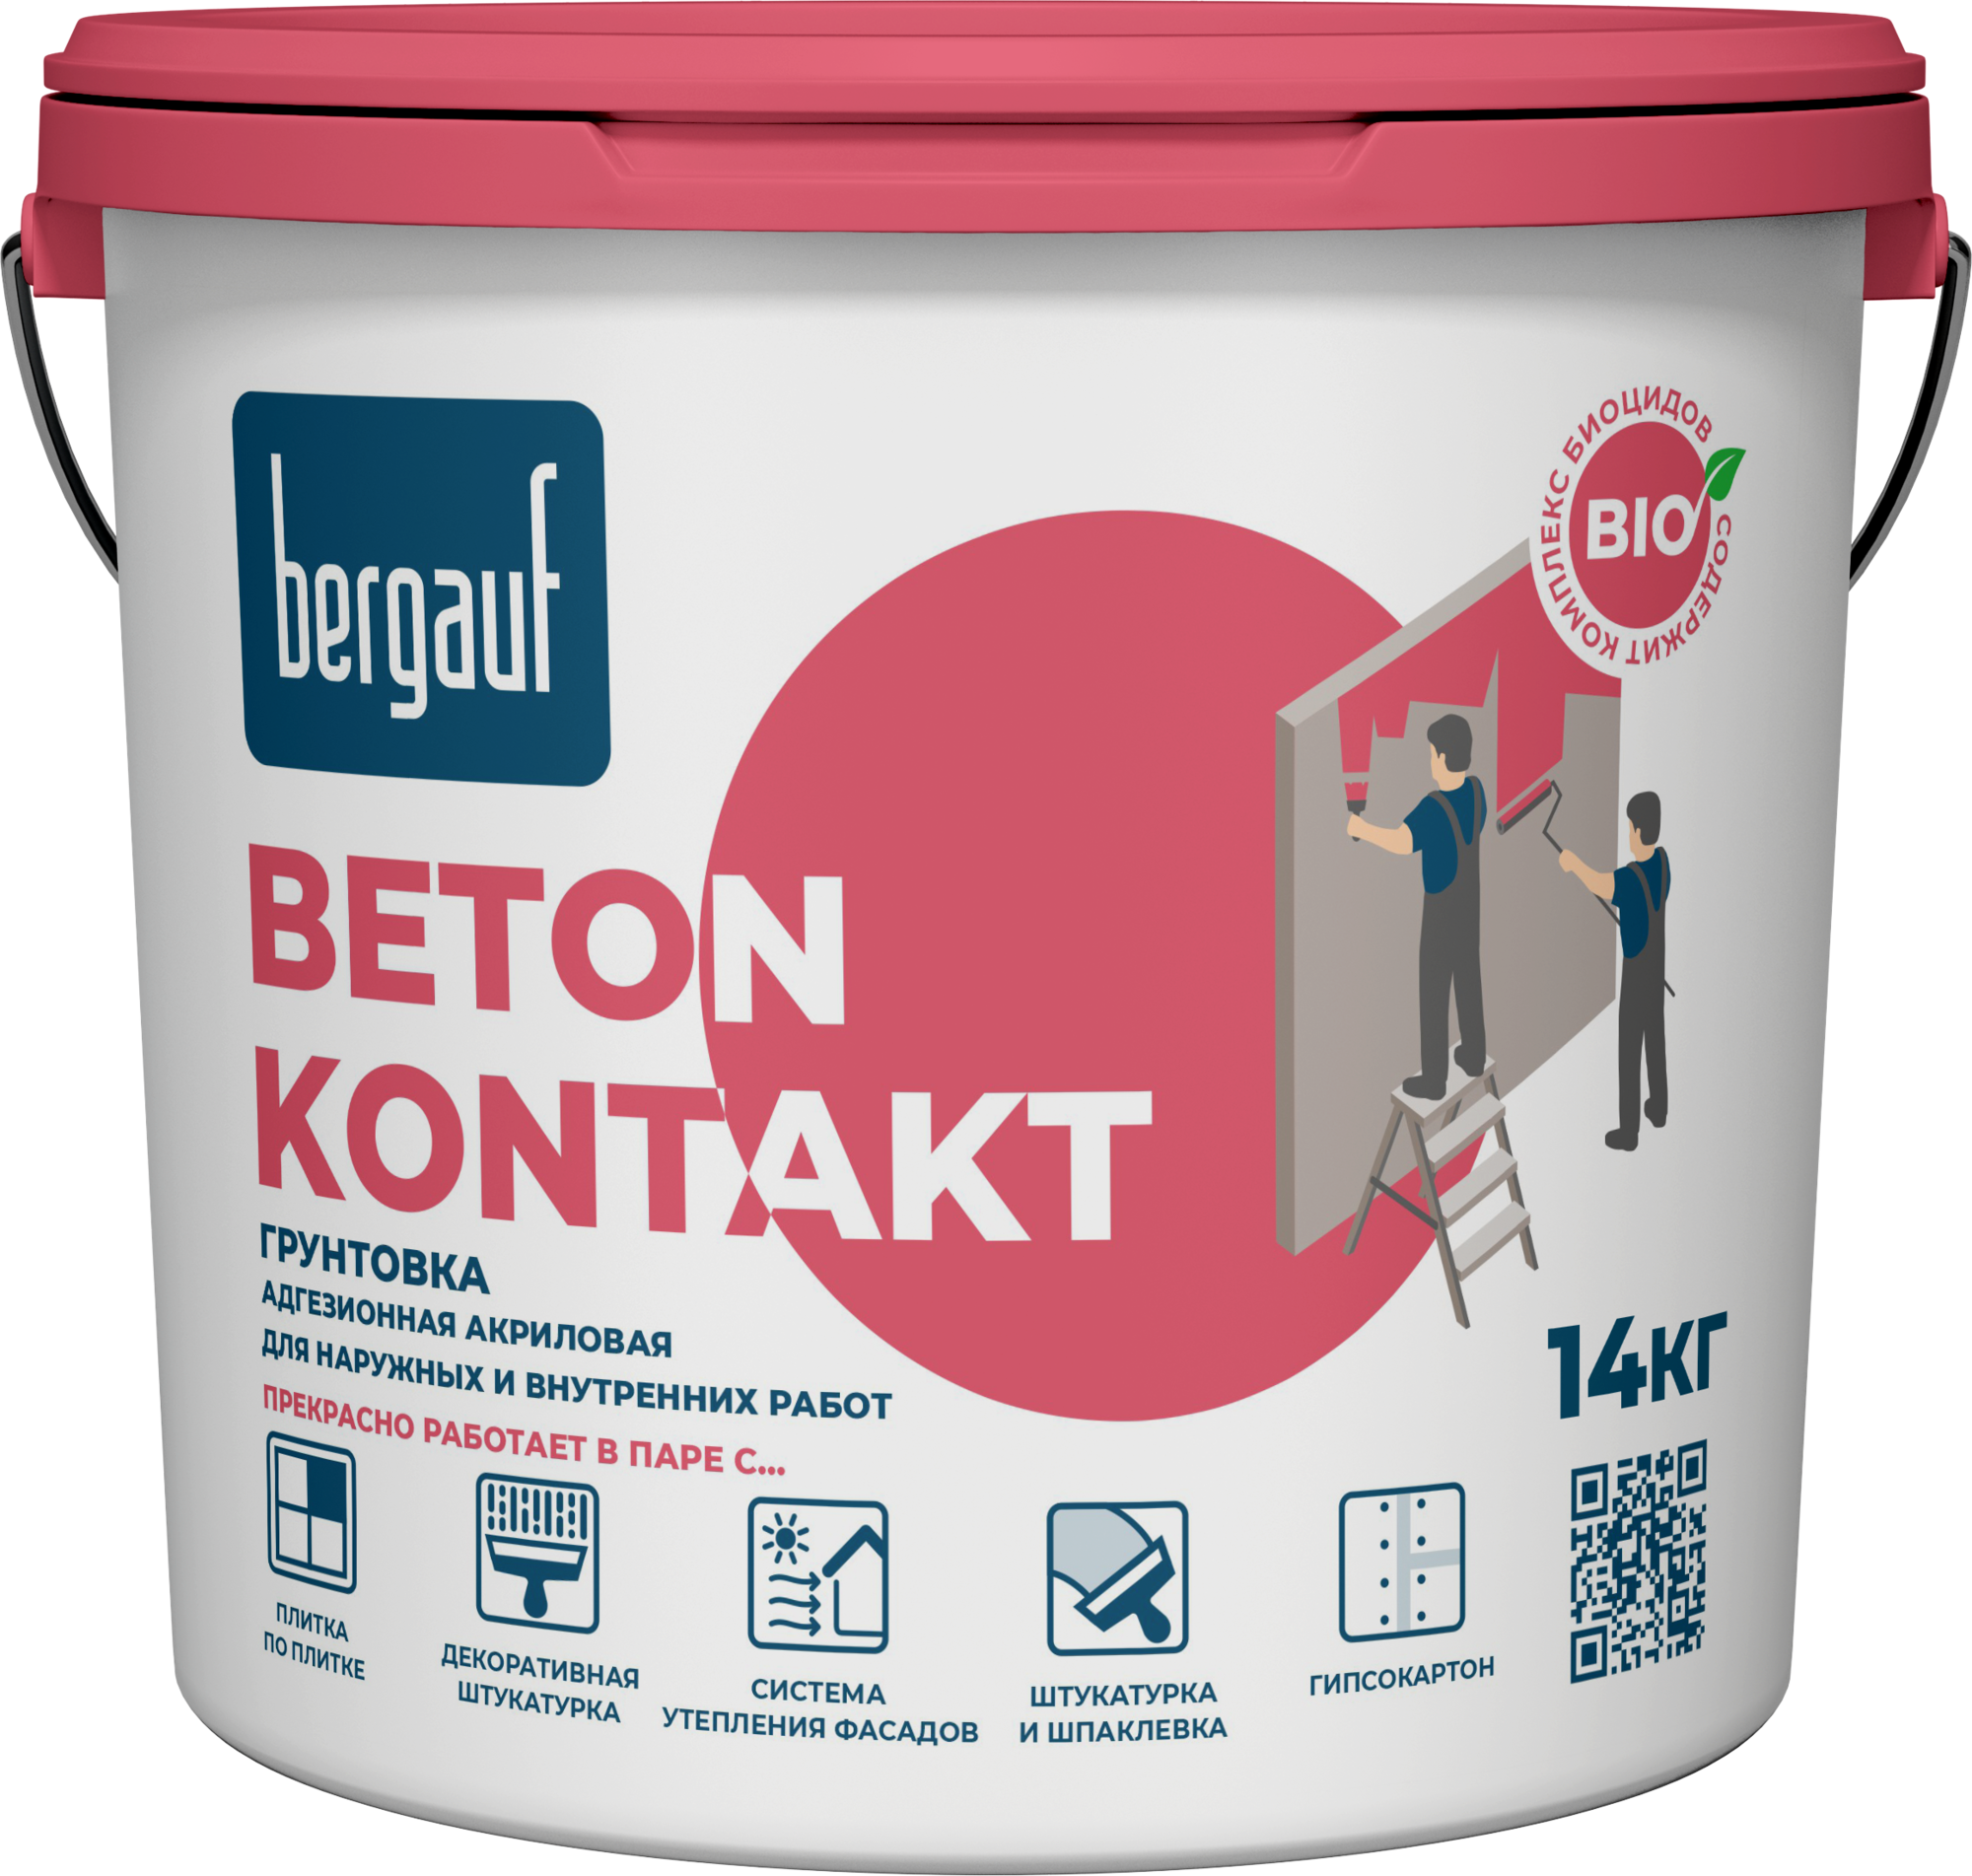 Сцепляющая (адгезионная) акриловая грунтовка для наружных и внутренних работ, BETON KONTAKT, 7 кг